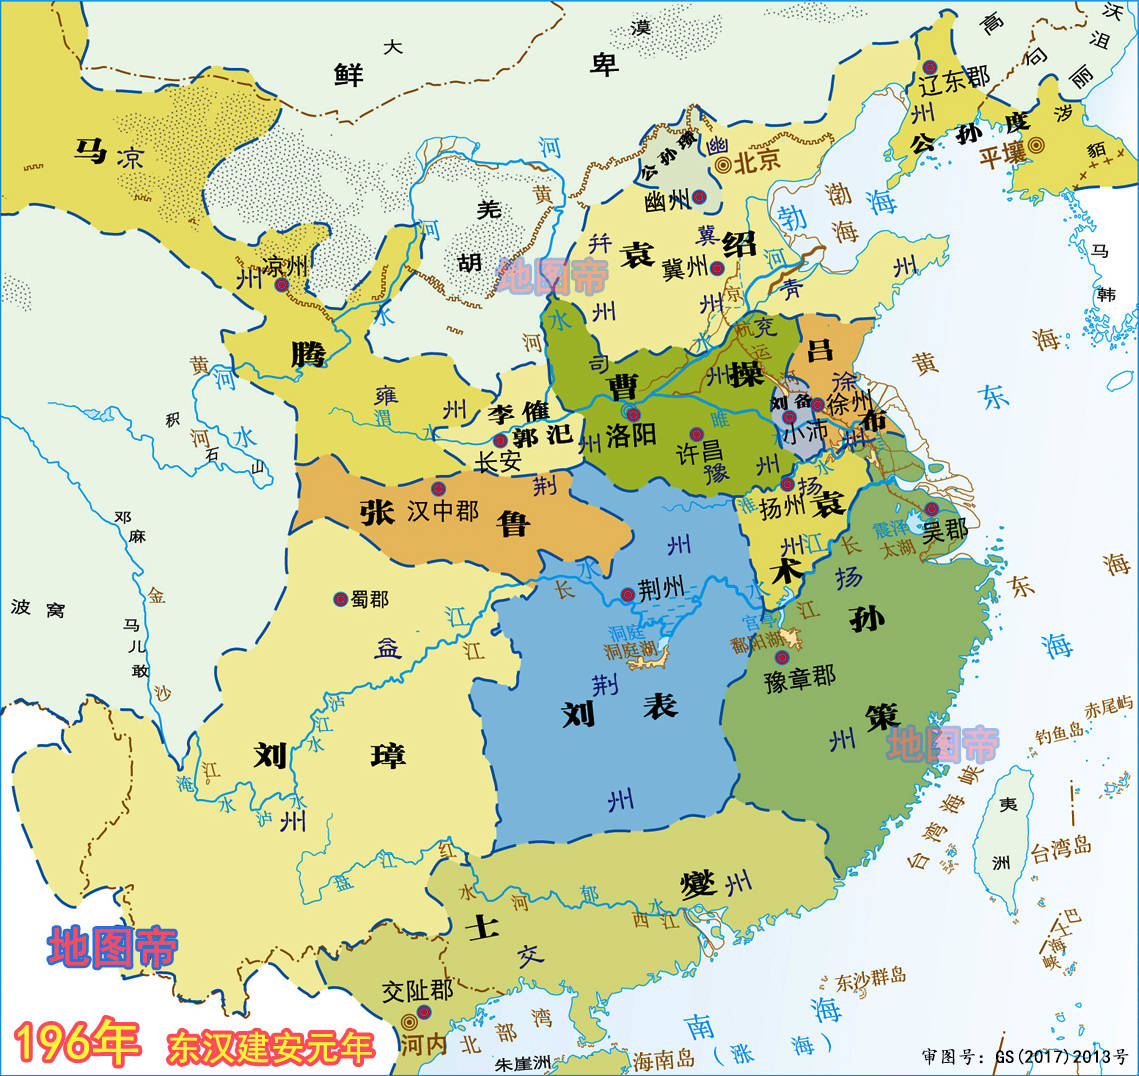 徐州沛县人口_江苏徐州沛县地图(3)